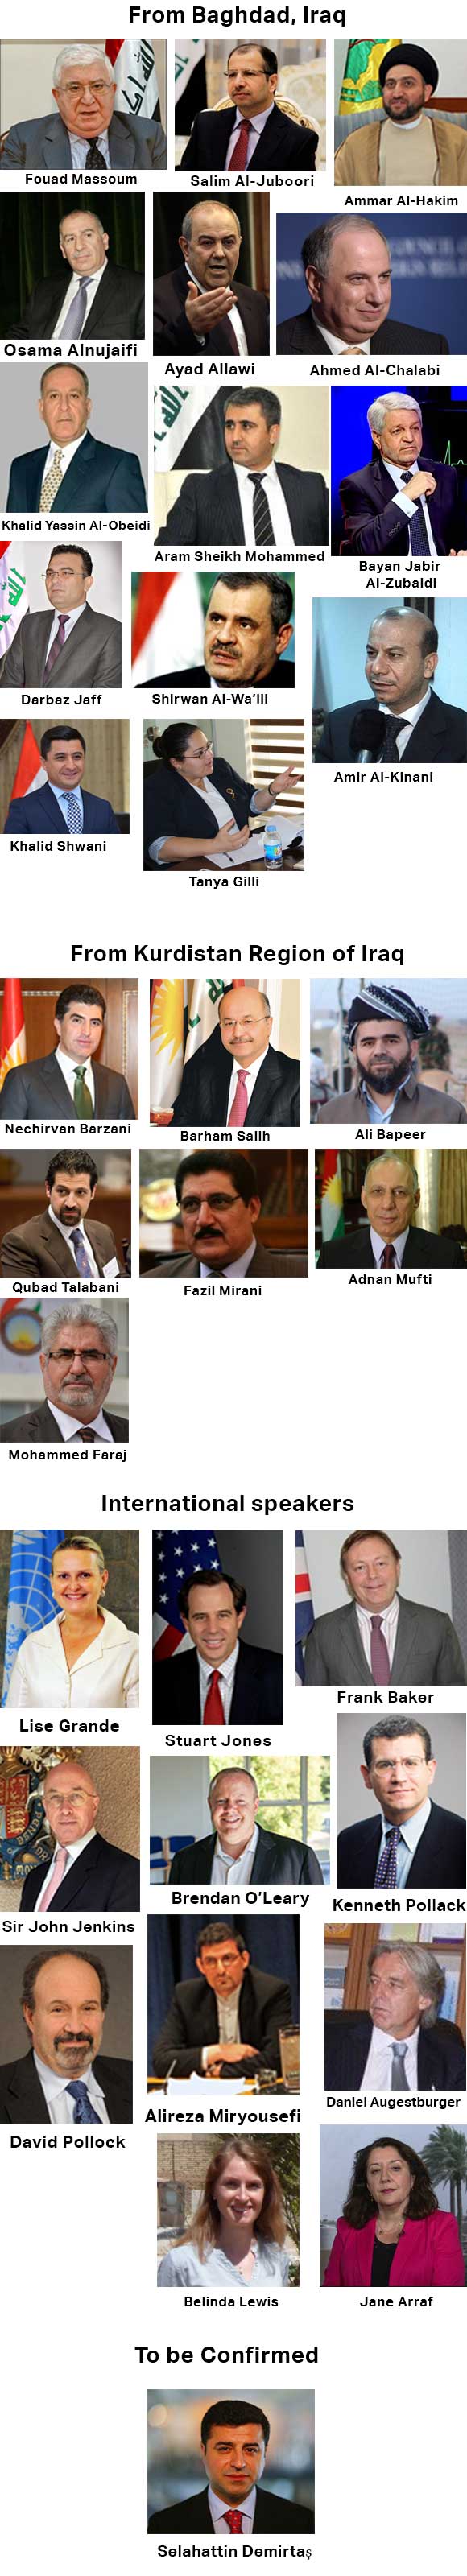 List-of-Speakers